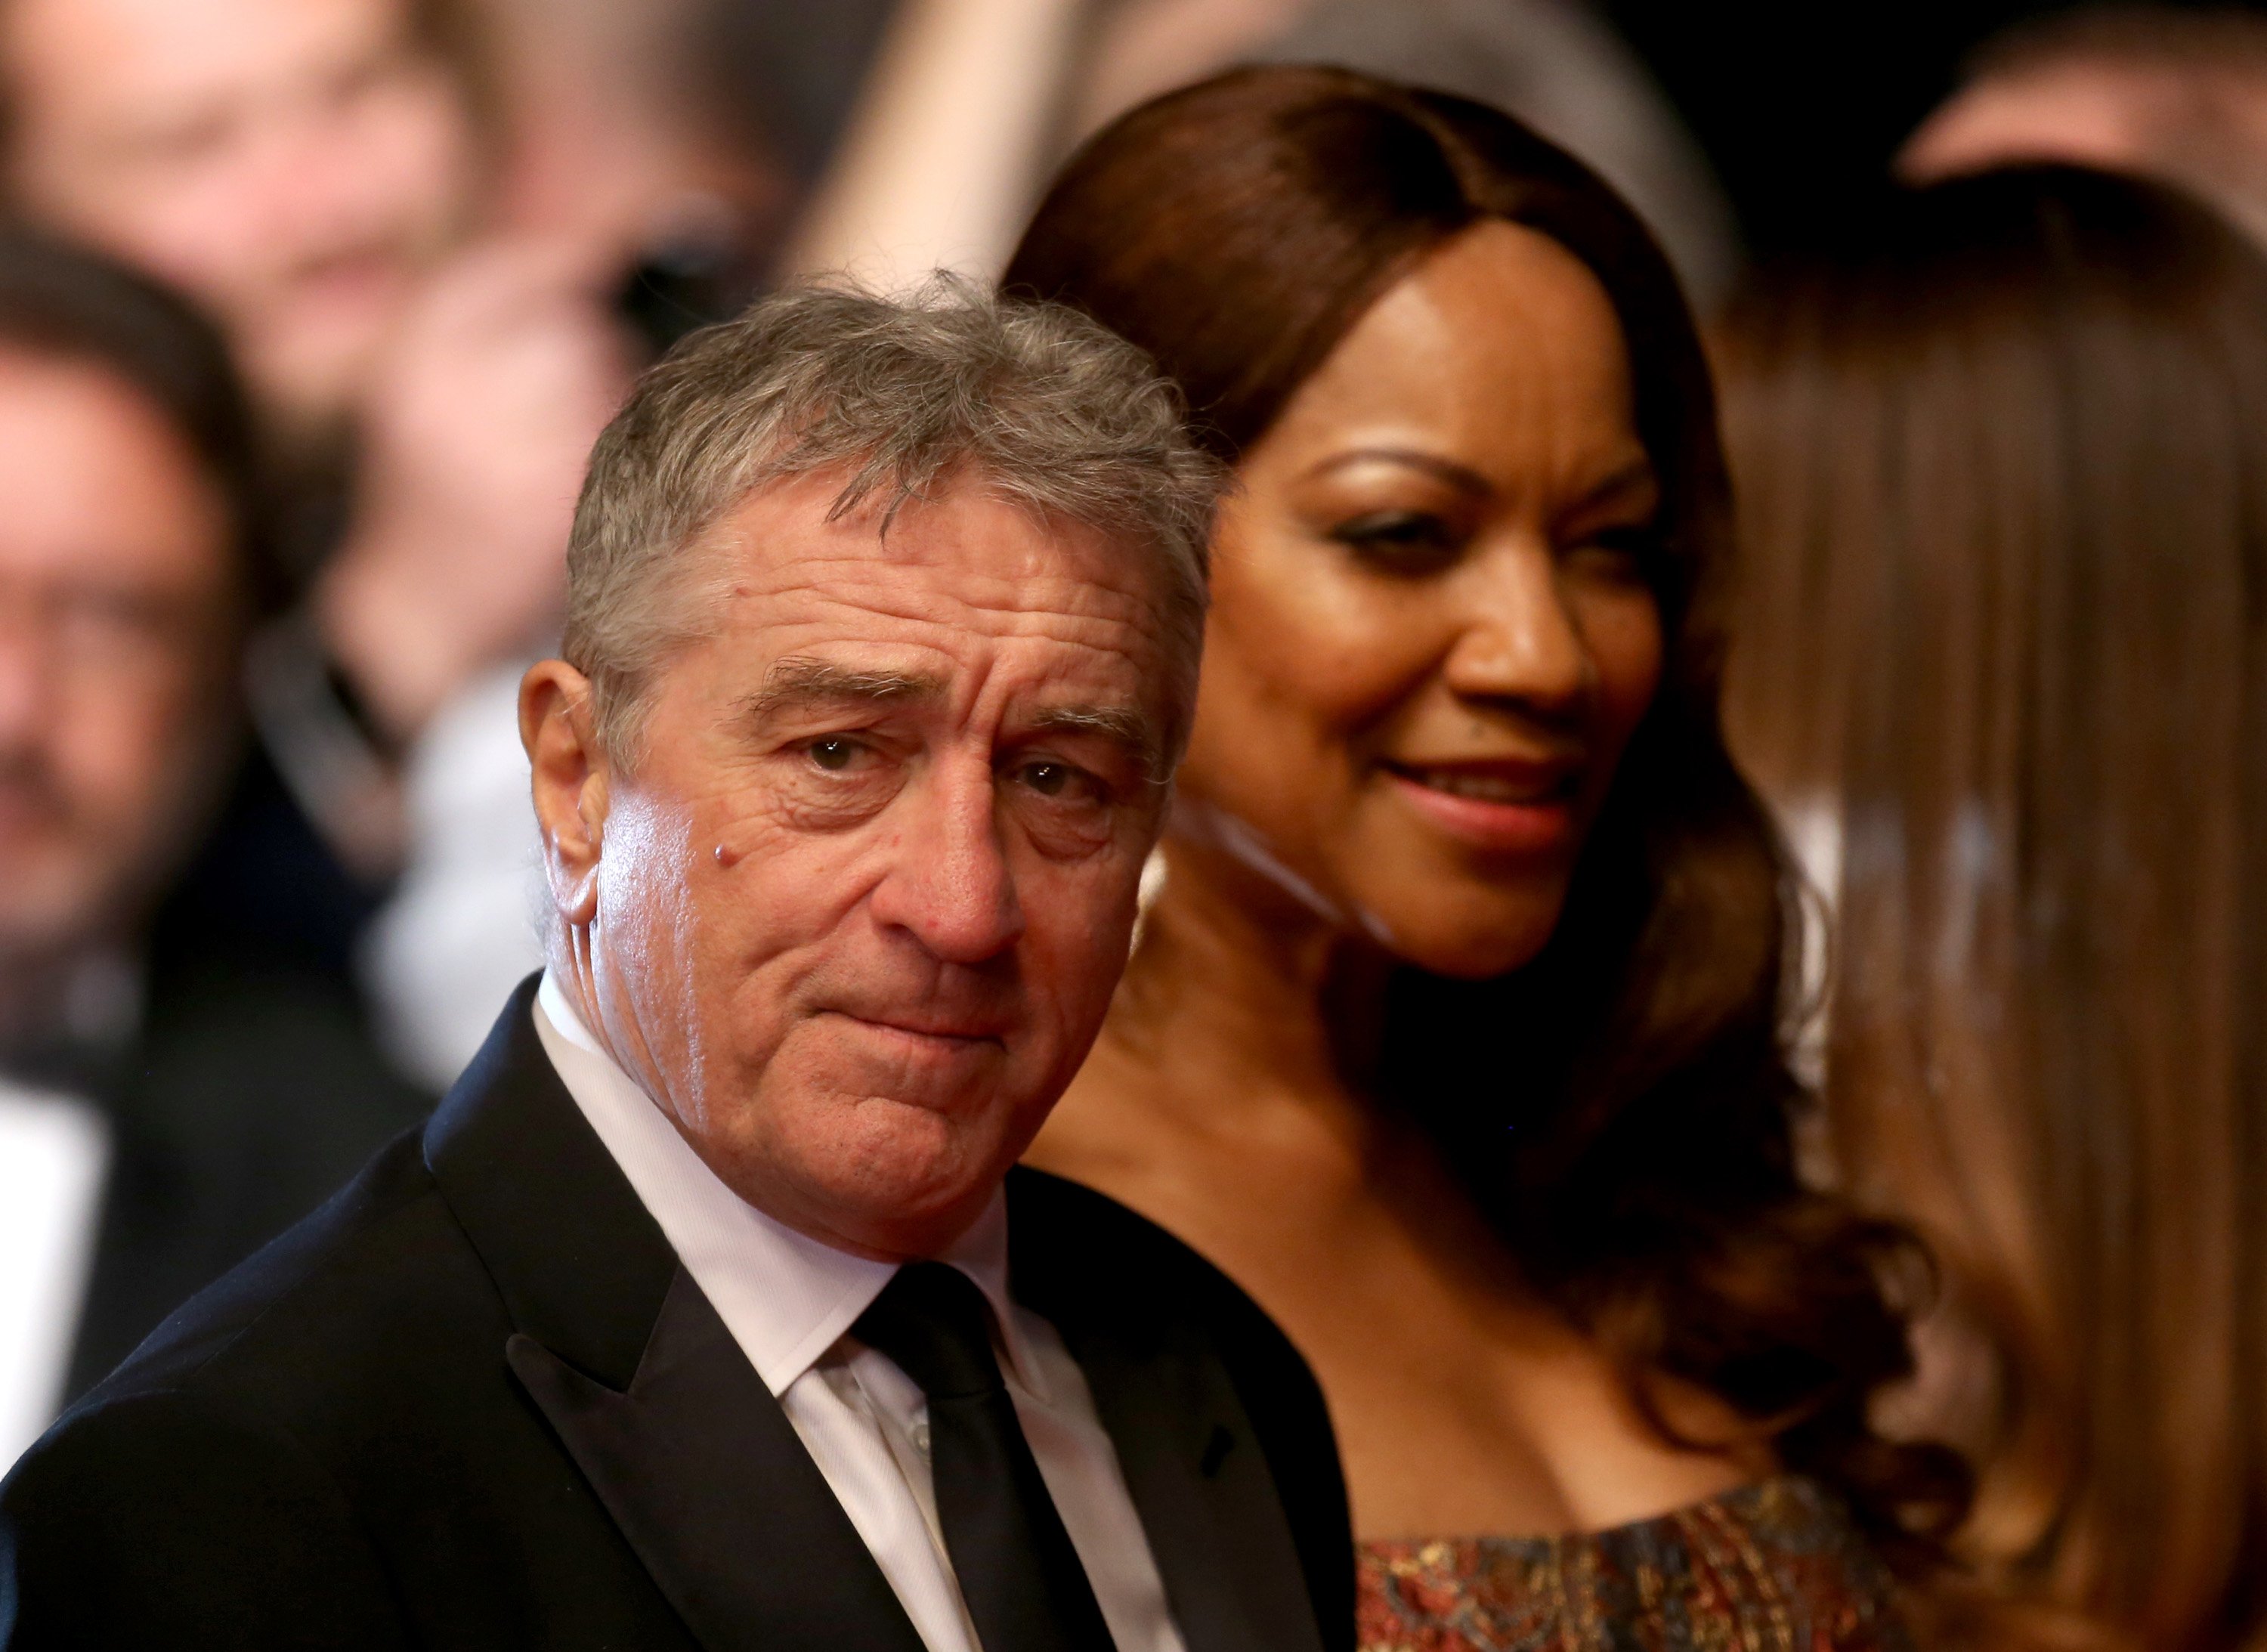 Robert de Niro und seine Frau Grace Hightower besuchen eine Vorführung von "Hands Of Stone" bei den jährlichen 69. Filmfestspielen von Cannes im Palais des Festivals am 16. Mai 2016 in Cannes, Frankreich | Quelle: Getty Images